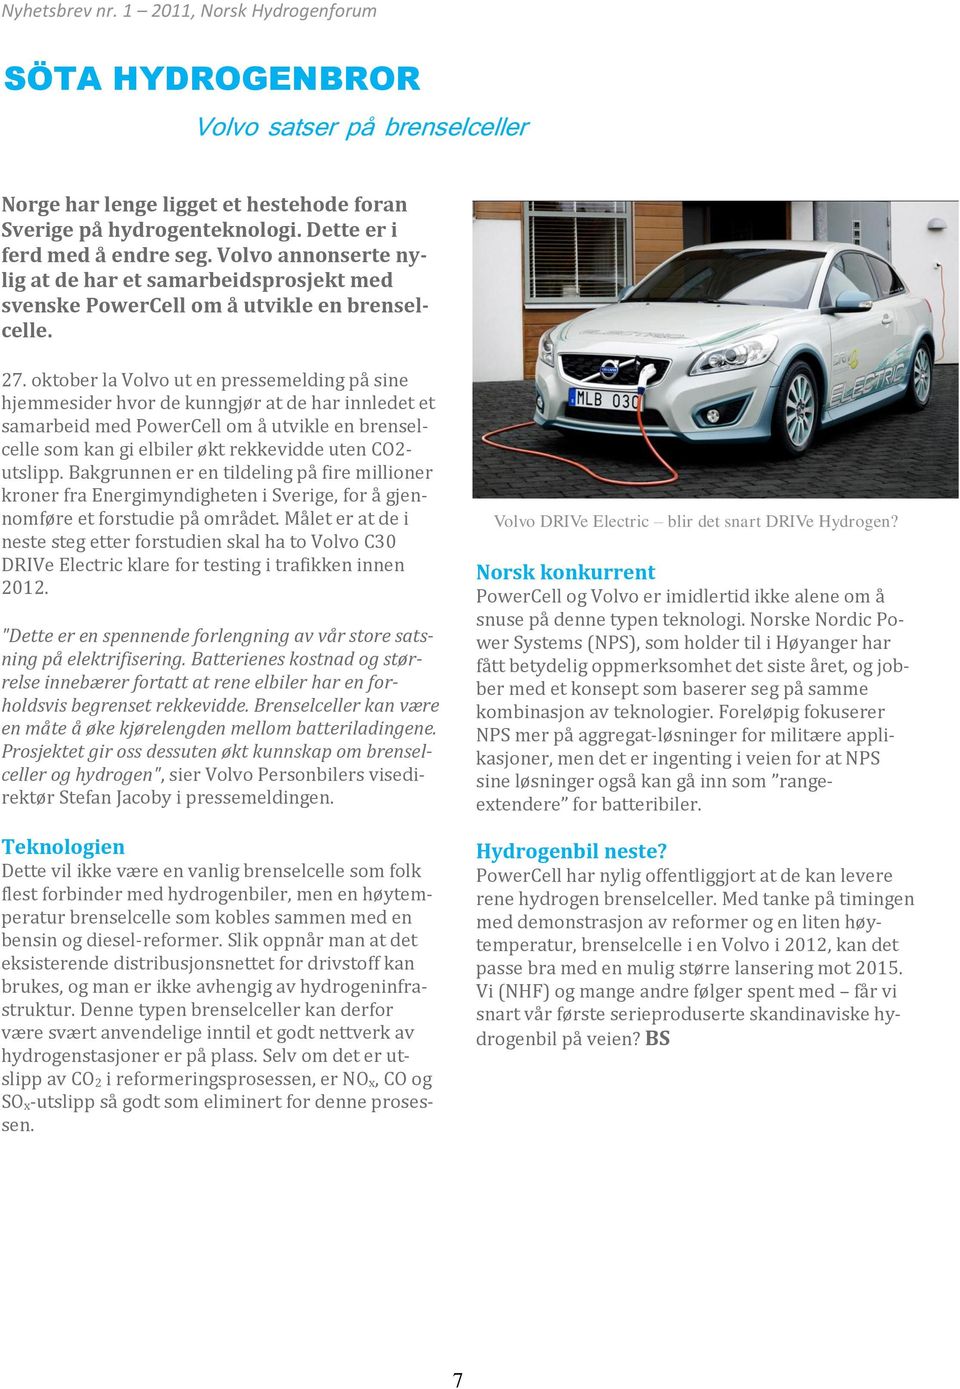 oktober la Volvo ut en pressemelding på sine hjemmesider hvor de kunngjør at de har innledet et samarbeid med PowerCell om å utvikle en brenselcelle som kan gi elbiler økt rekkevidde uten CO2-